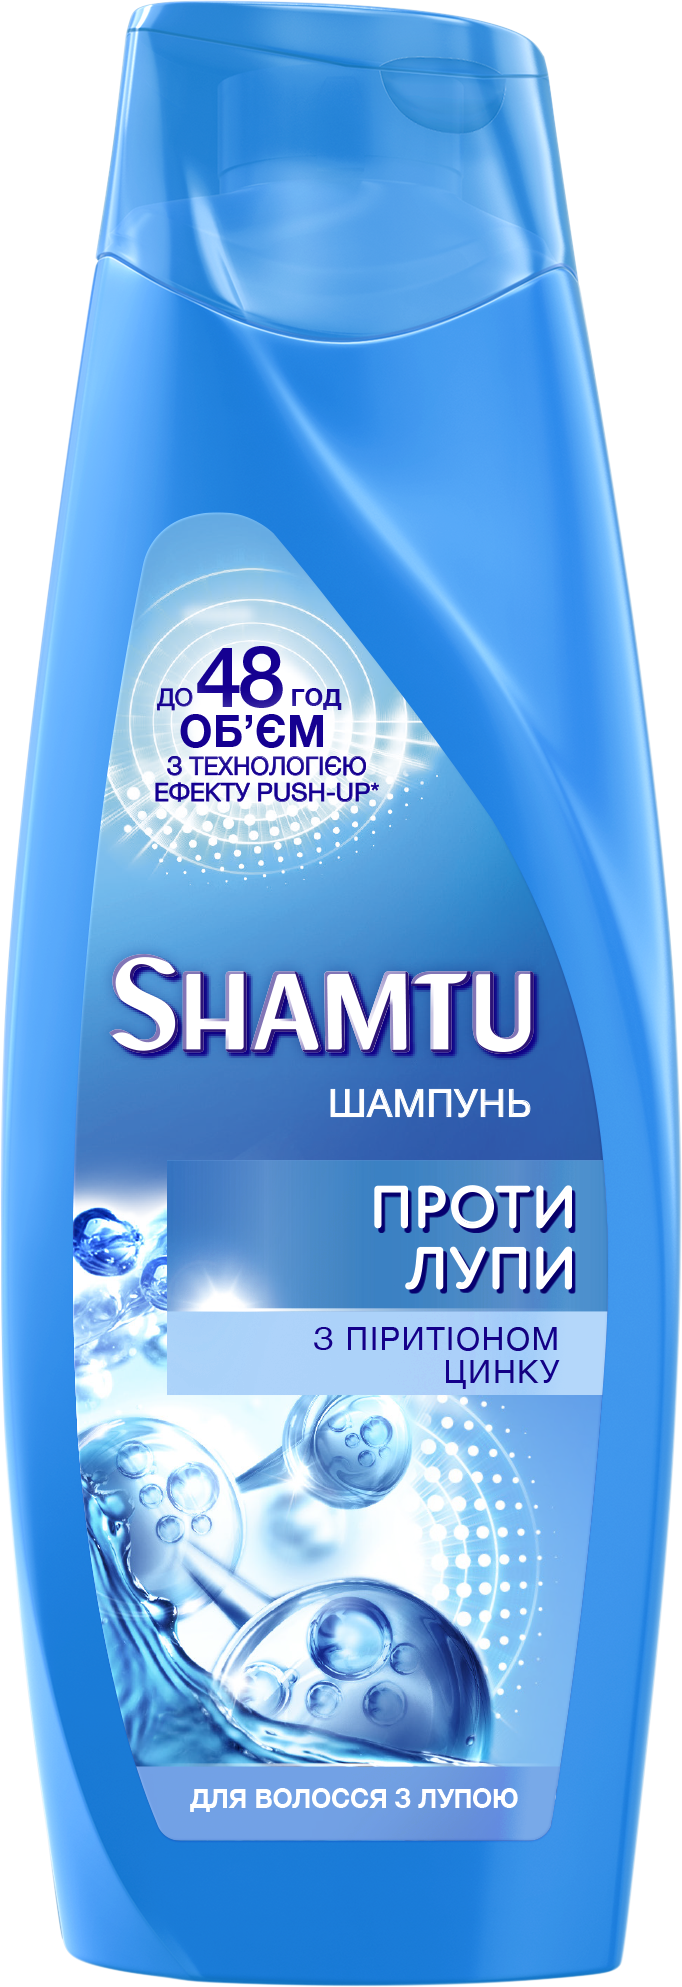 Шампунь проти лупи Shamtu з пірітіноном цинку для волосся, схильного до лупи, 200 мл - фото 1